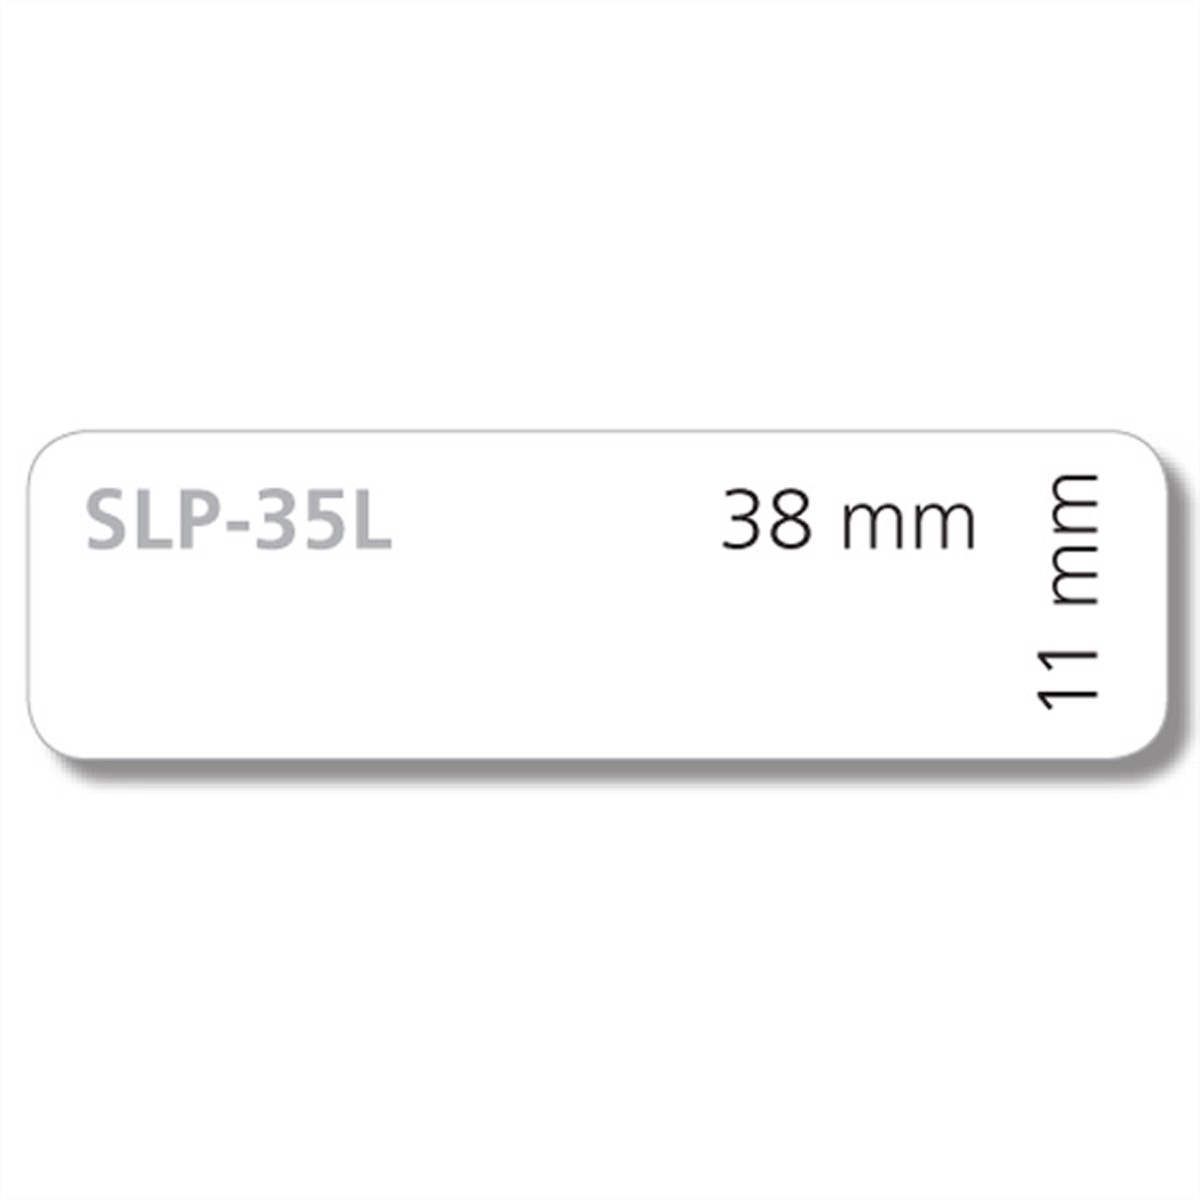 SEIKO 35mm-Etiketten für Dias, SLP-35L, 300 St. 1 Rolle